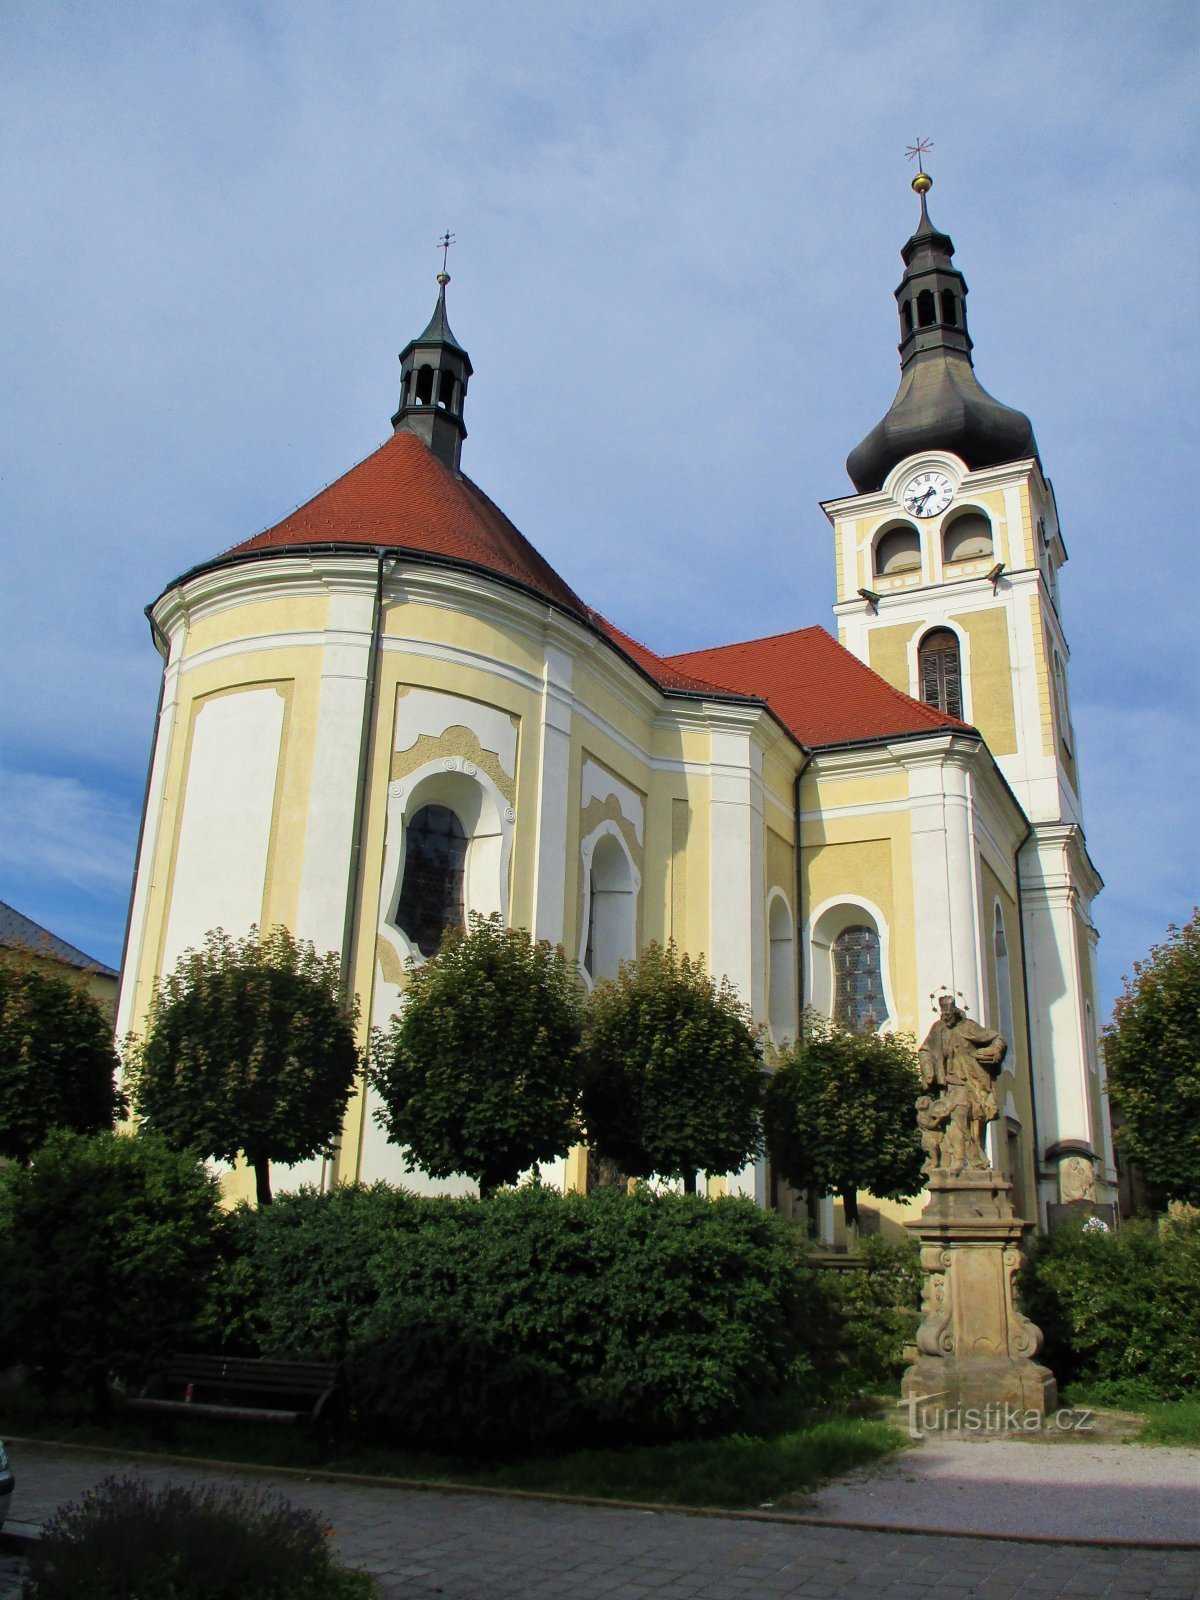 Church of the Nativity of the Virgin Mary (Hořice, 26.7.2020/XNUMX/XNUMX)